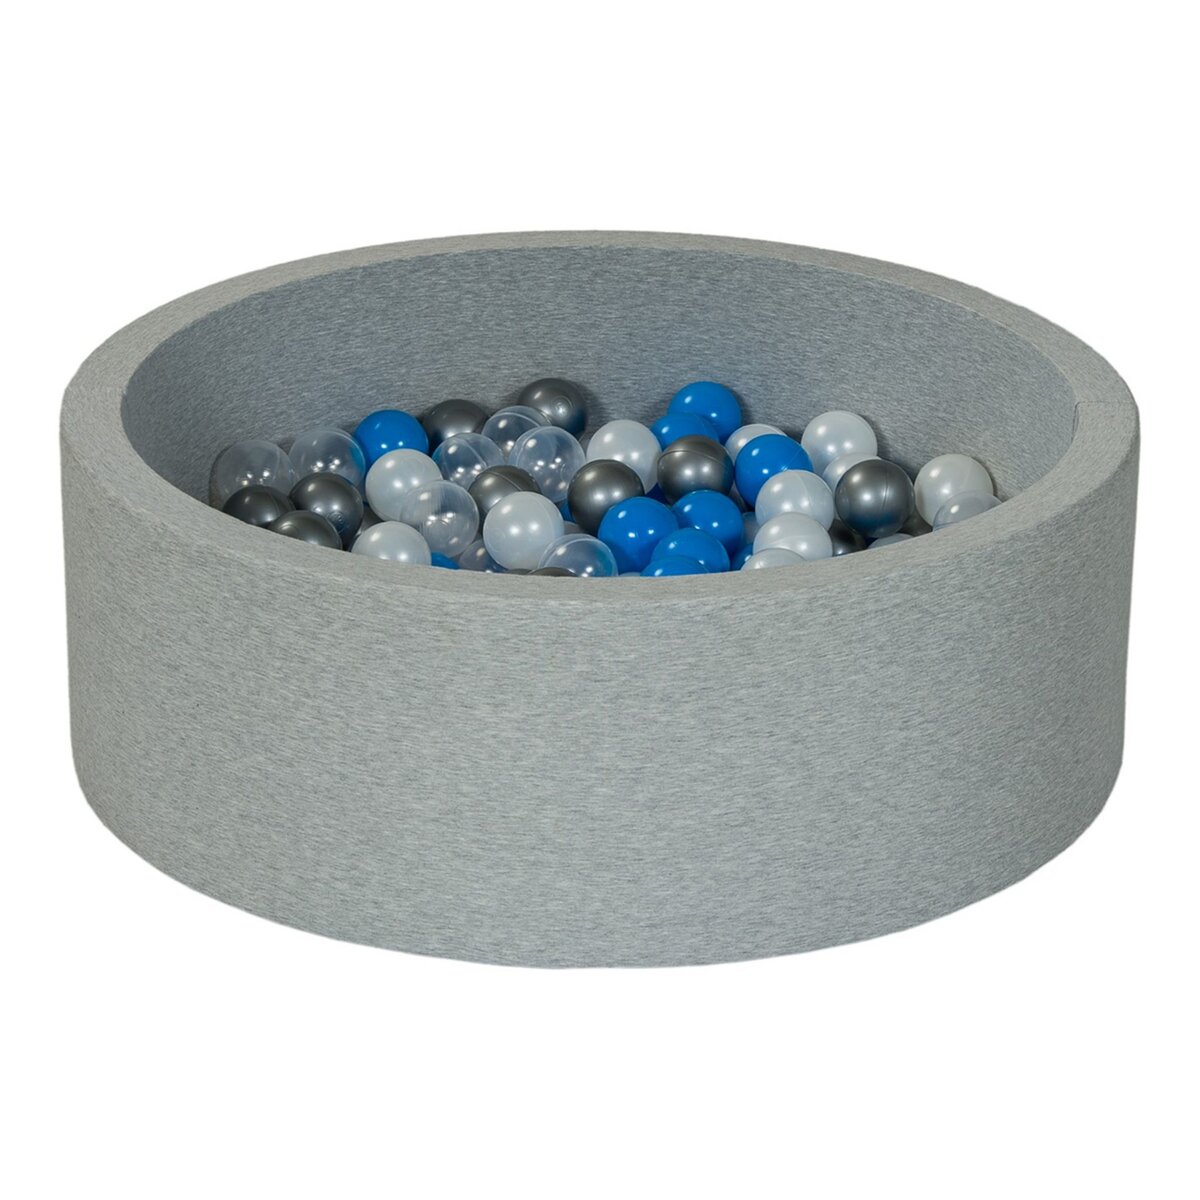  Piscine à balles Aire de jeu + 150 balles perle, transparent, bleu, argent